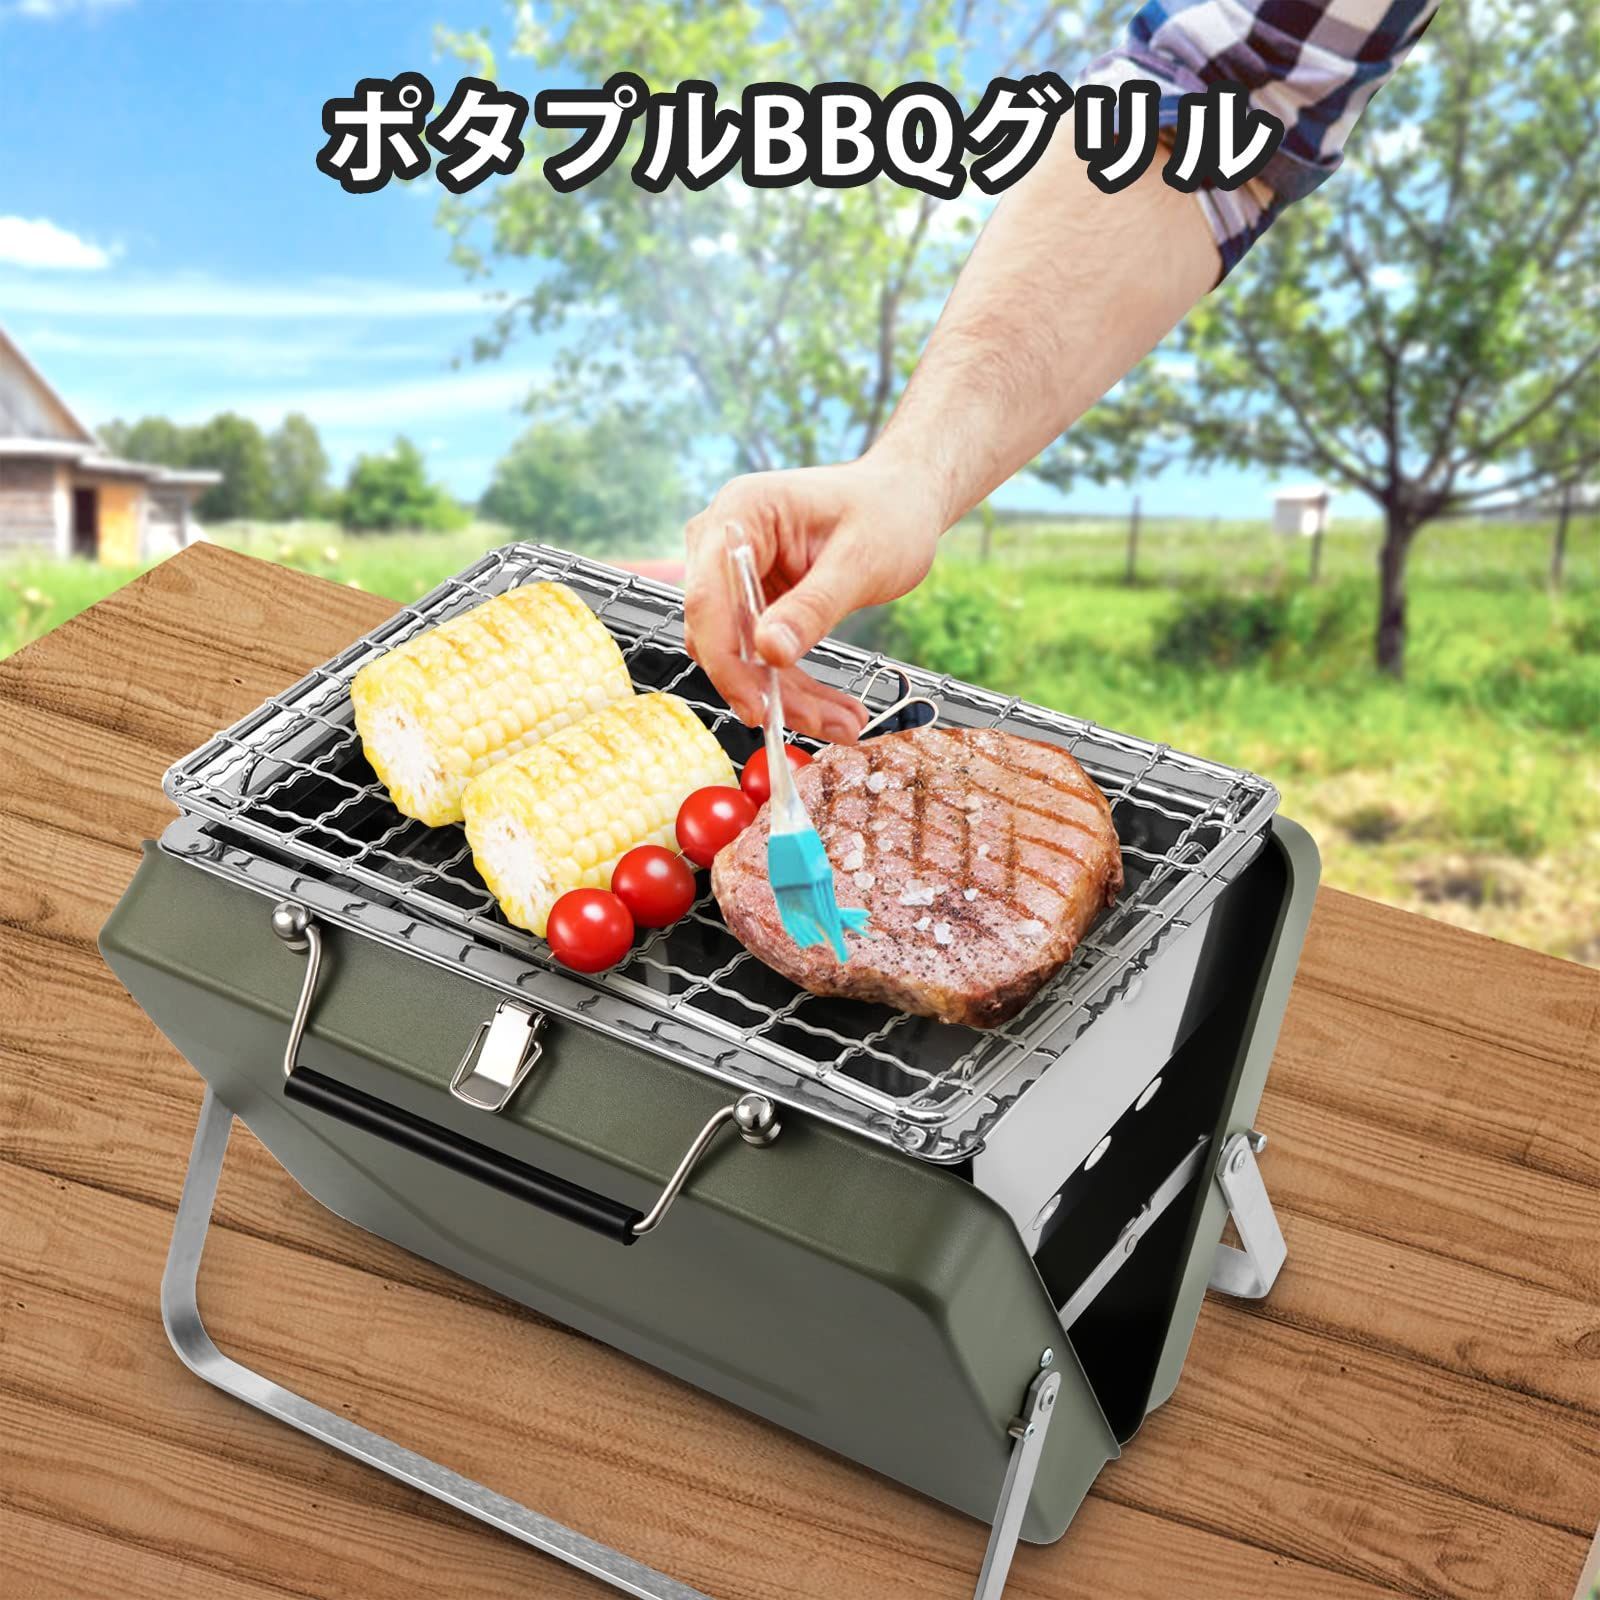 新品 小型 BBQコンロ mini 卓上グリル 1-2人用 B6型 ステンレス製 焚火